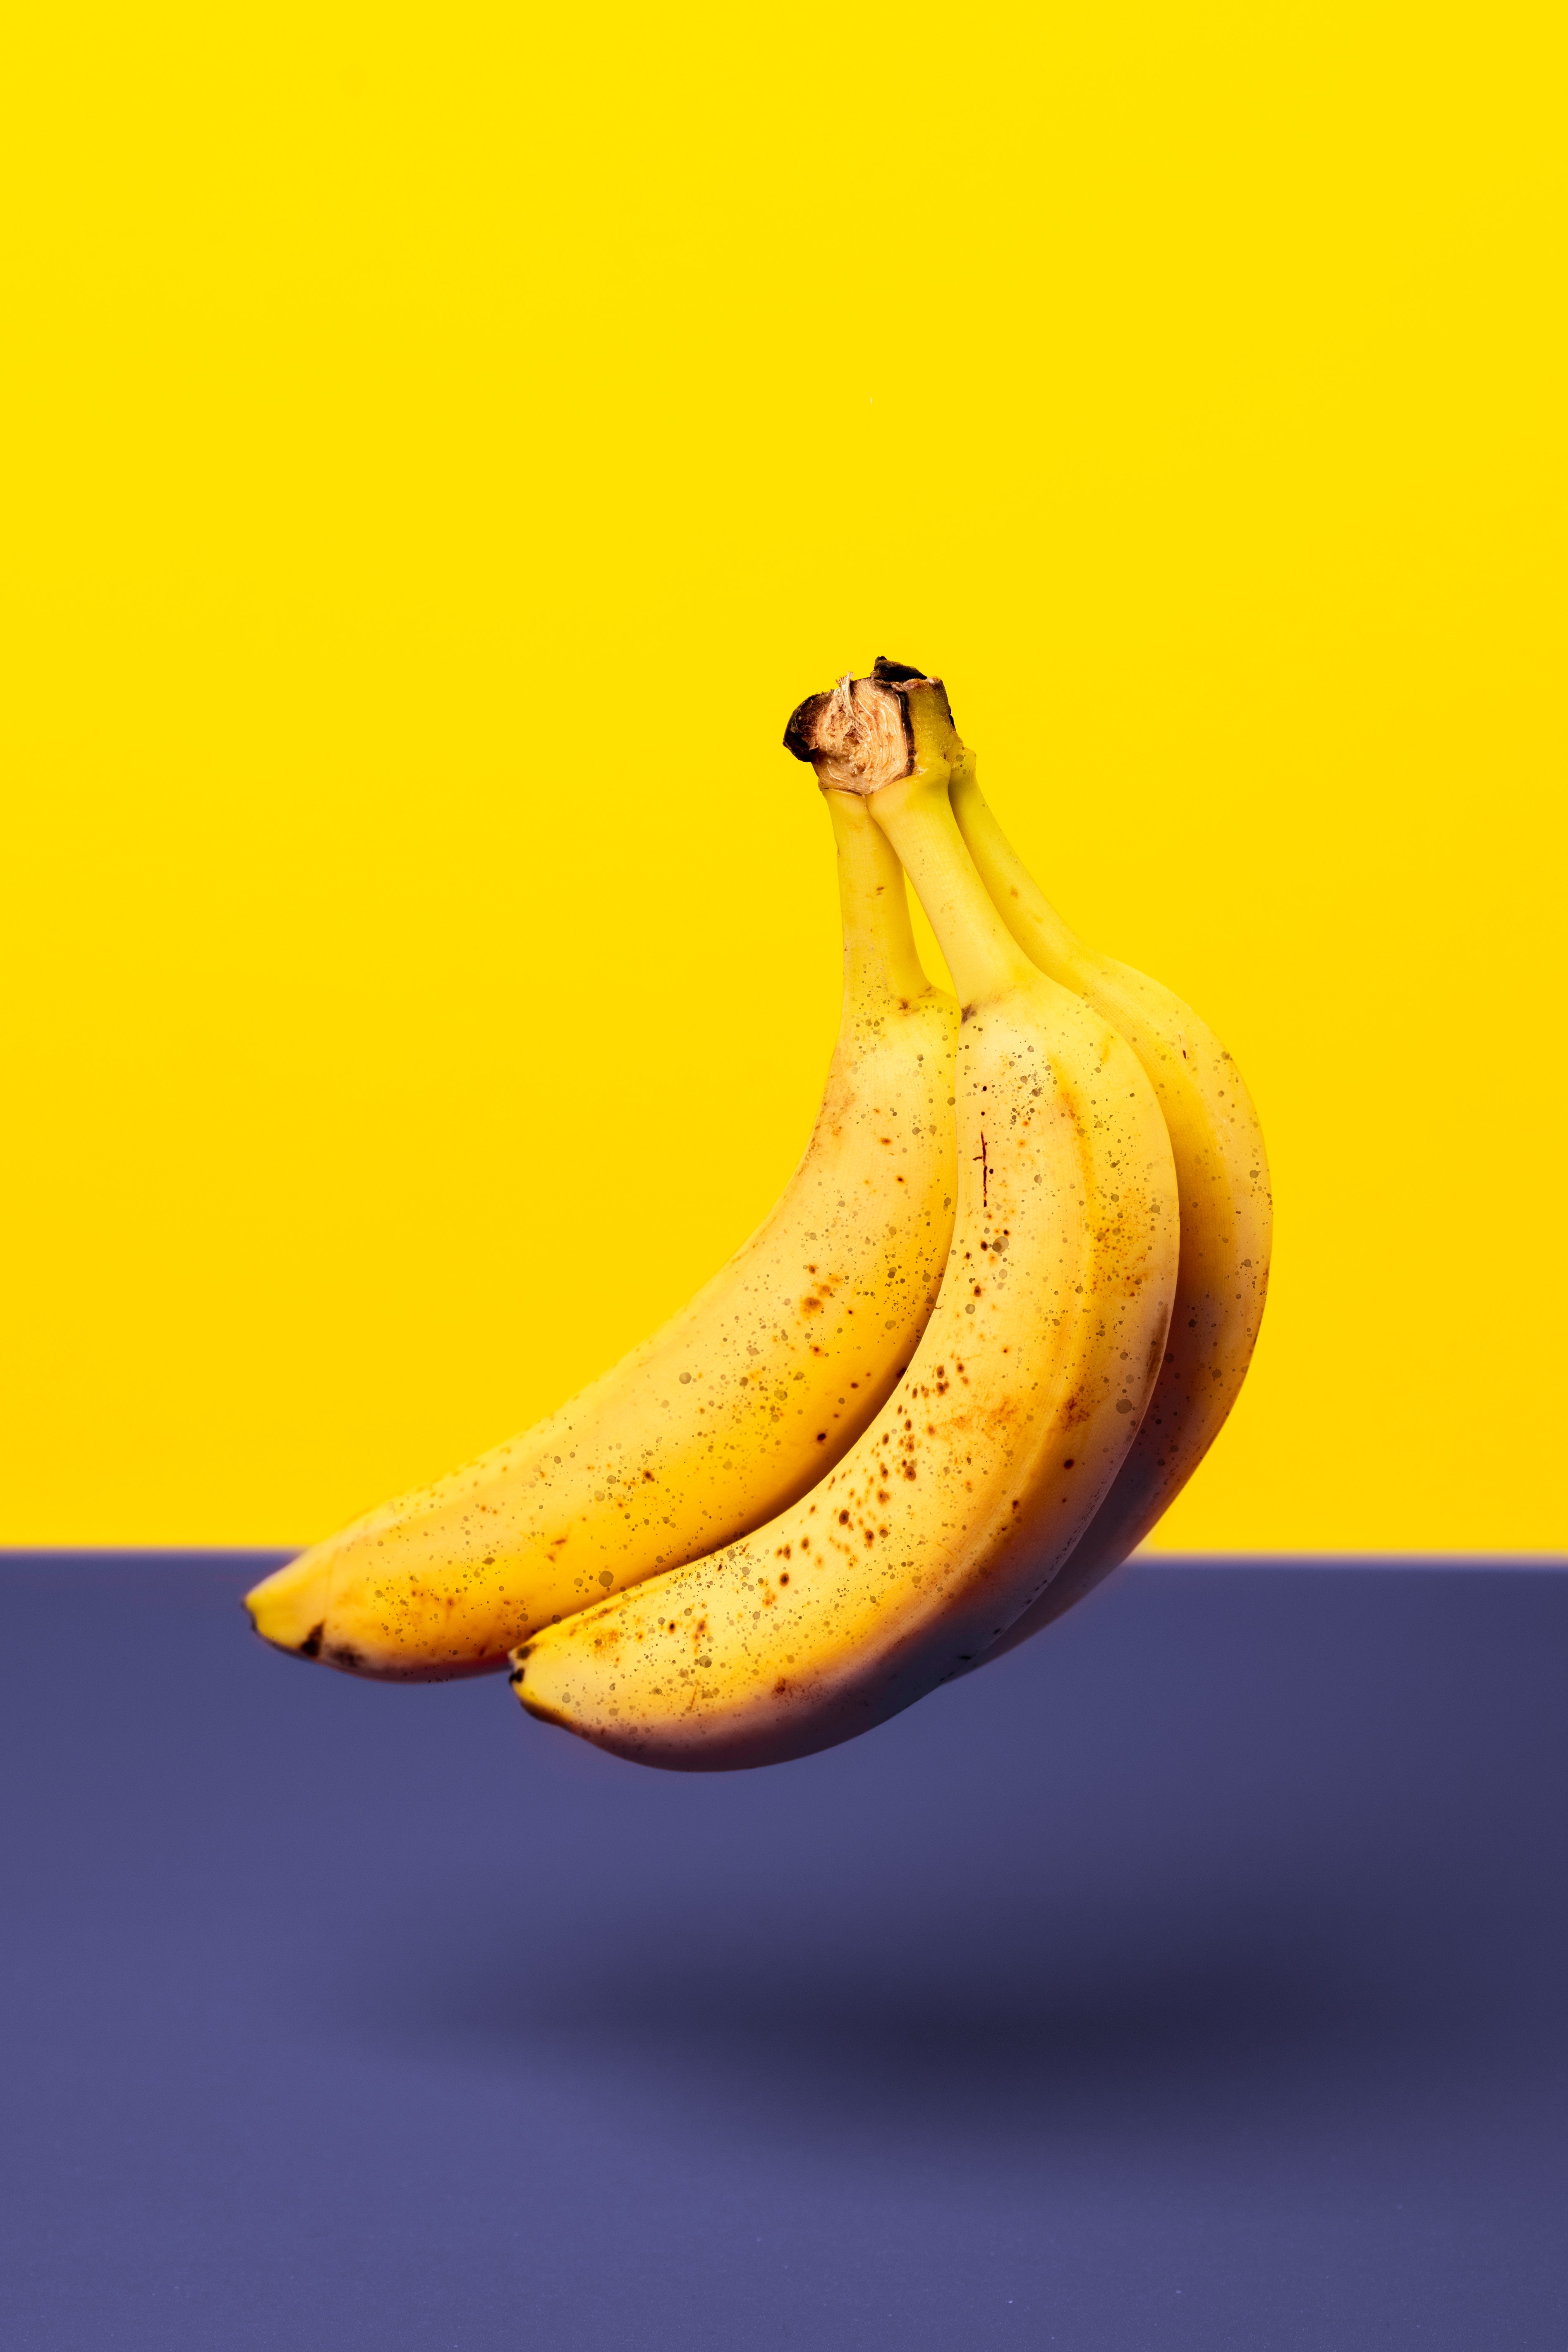 banana shape